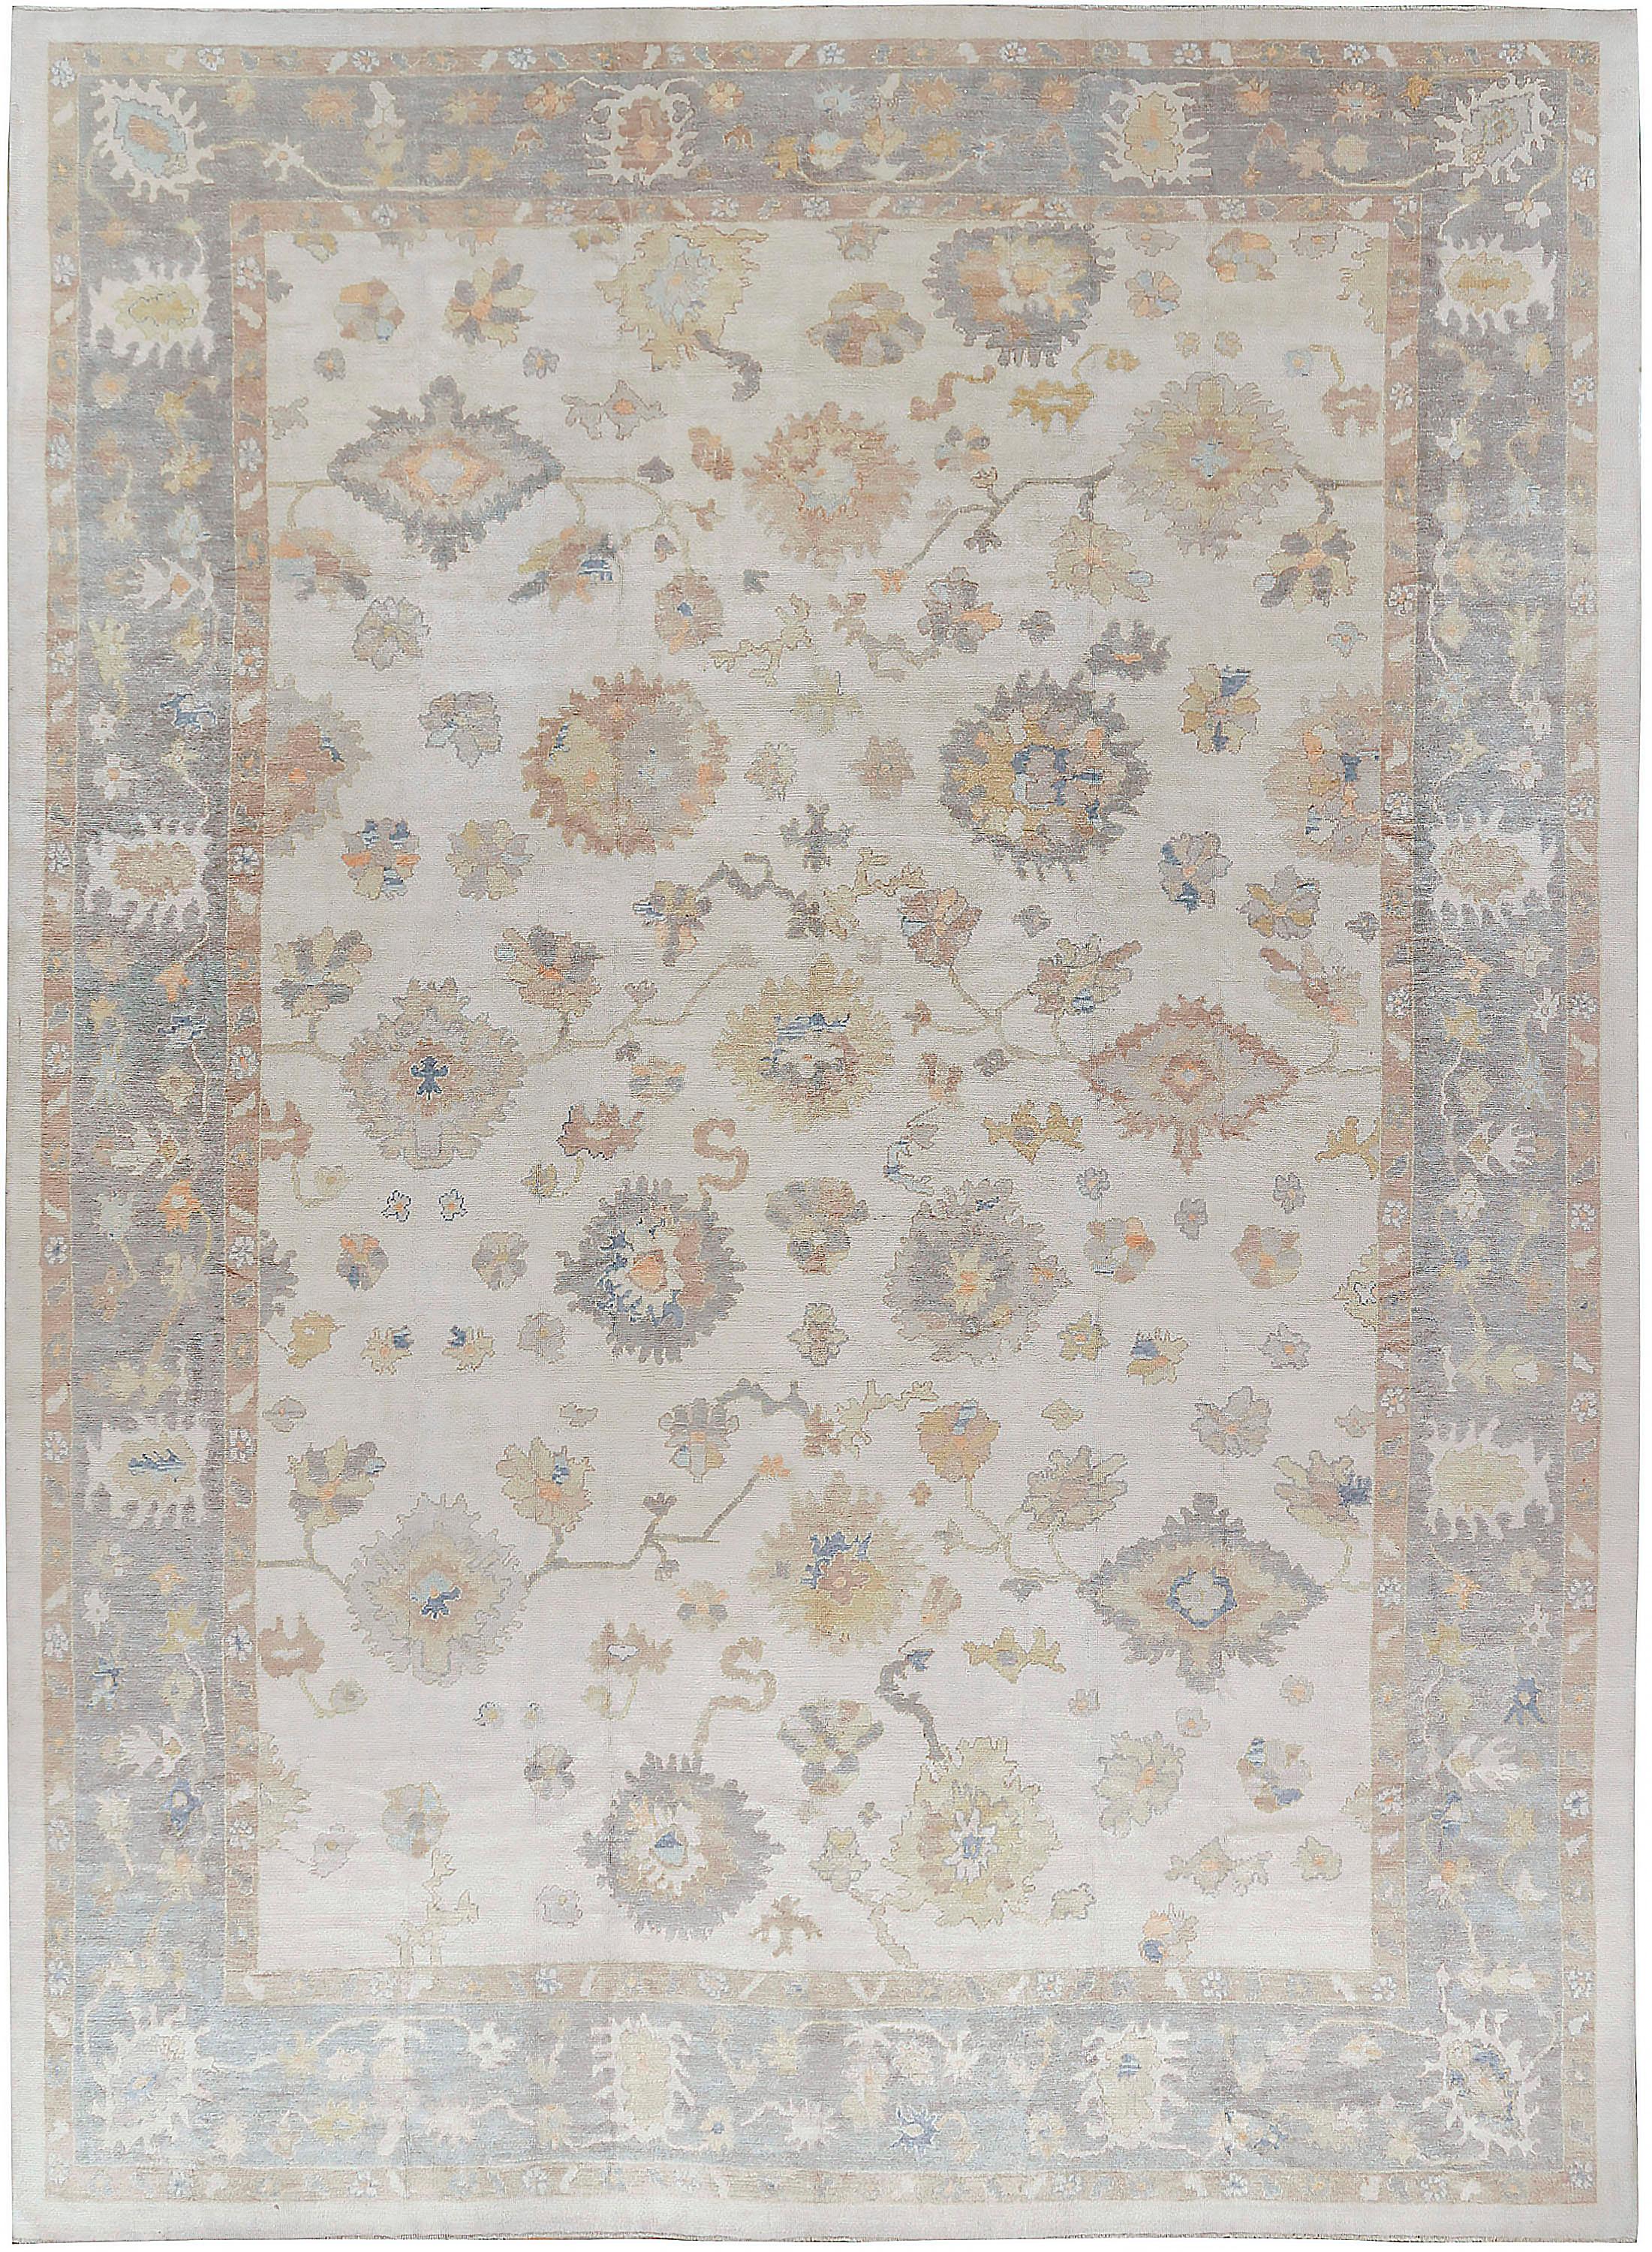 Übergroßer handgewebter Teppich im Oushak-Stil, 14'4 x 20'8. Handgewebt in der Türkei unter Verwendung der feinsten MATERIALIEN ist dies eine klassische Nachbildung eines Oushak-Teppichs in sanften Farben.